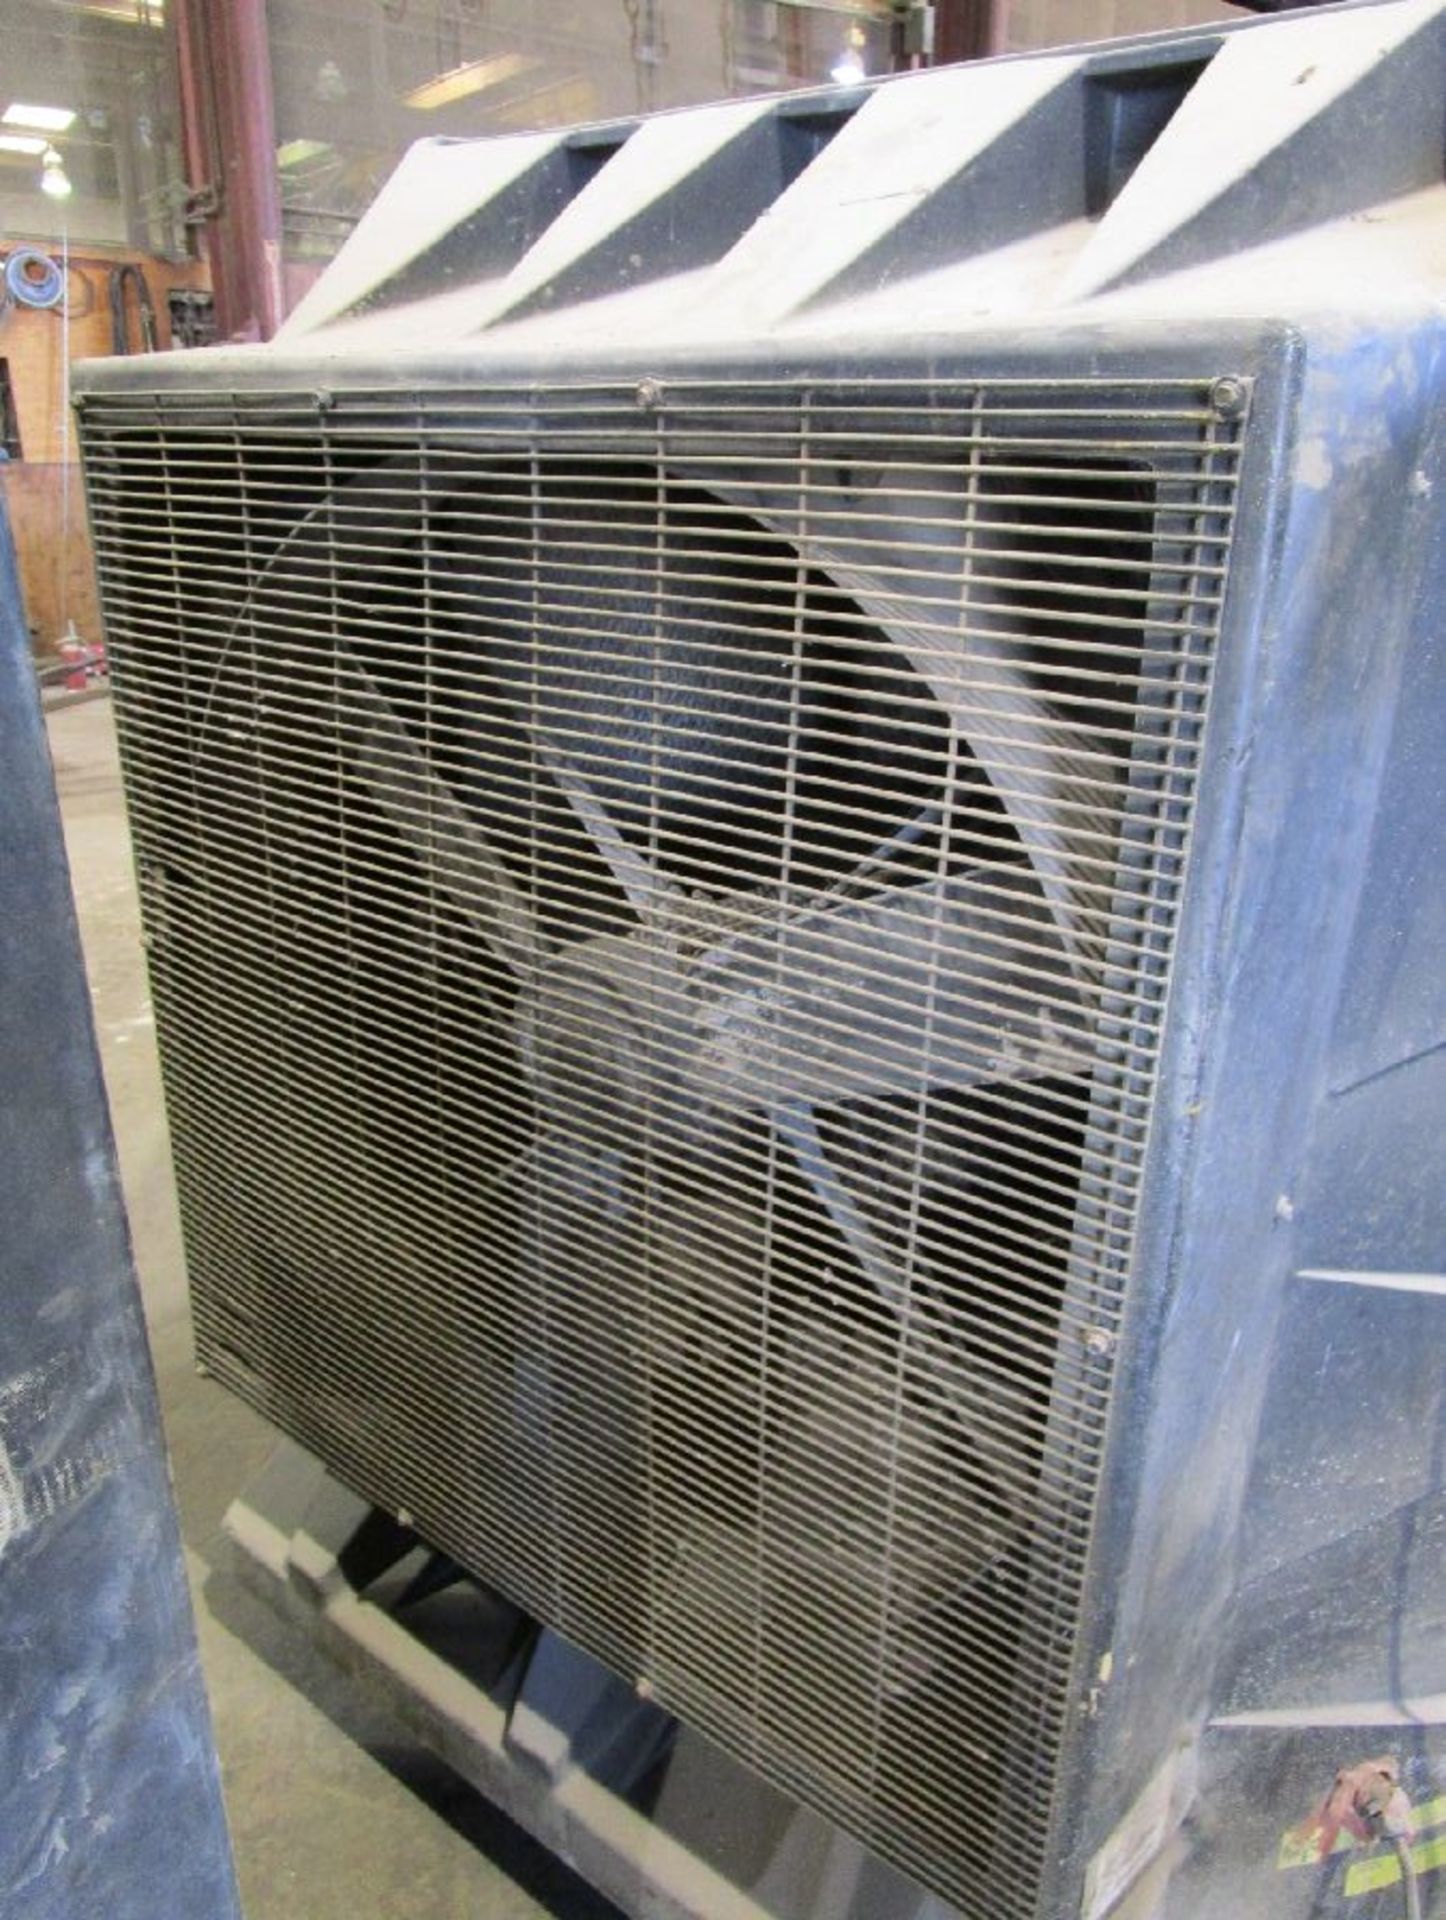 General Shelters Model HP 36" - 120 Volt Evaporative Cooler - Image 2 of 4